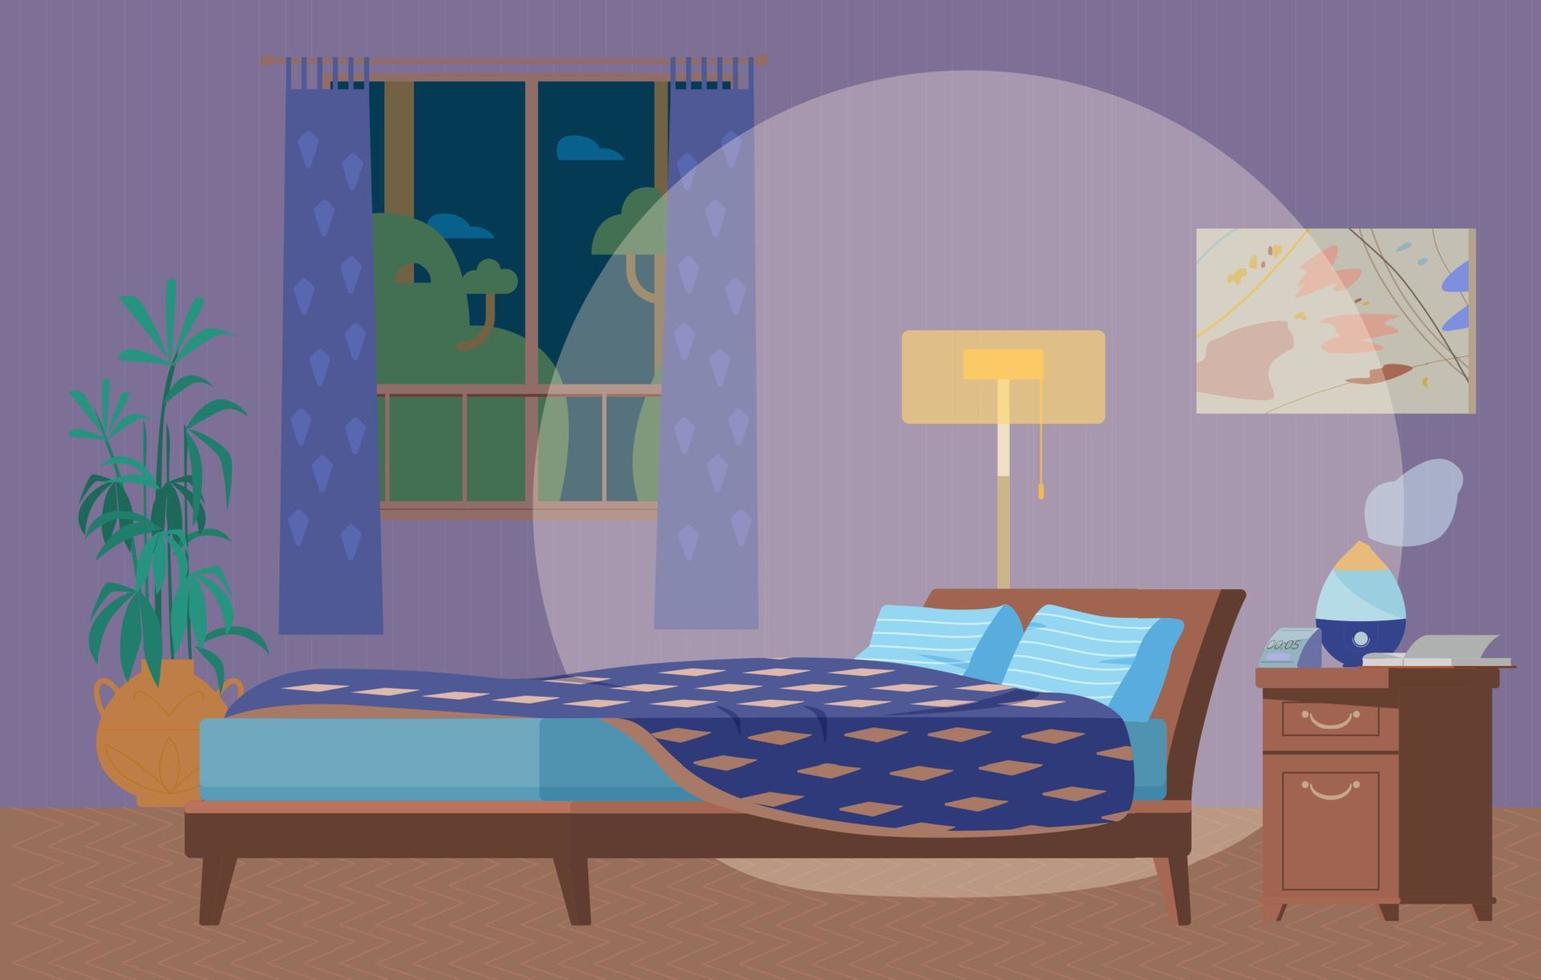 quarto aconchegante na ilustração vetorial plana interior à noite. móveis de madeira, cama, luminária de chão, janela, mesa de cabeceira com umidificador, relógio, plantas. vetor